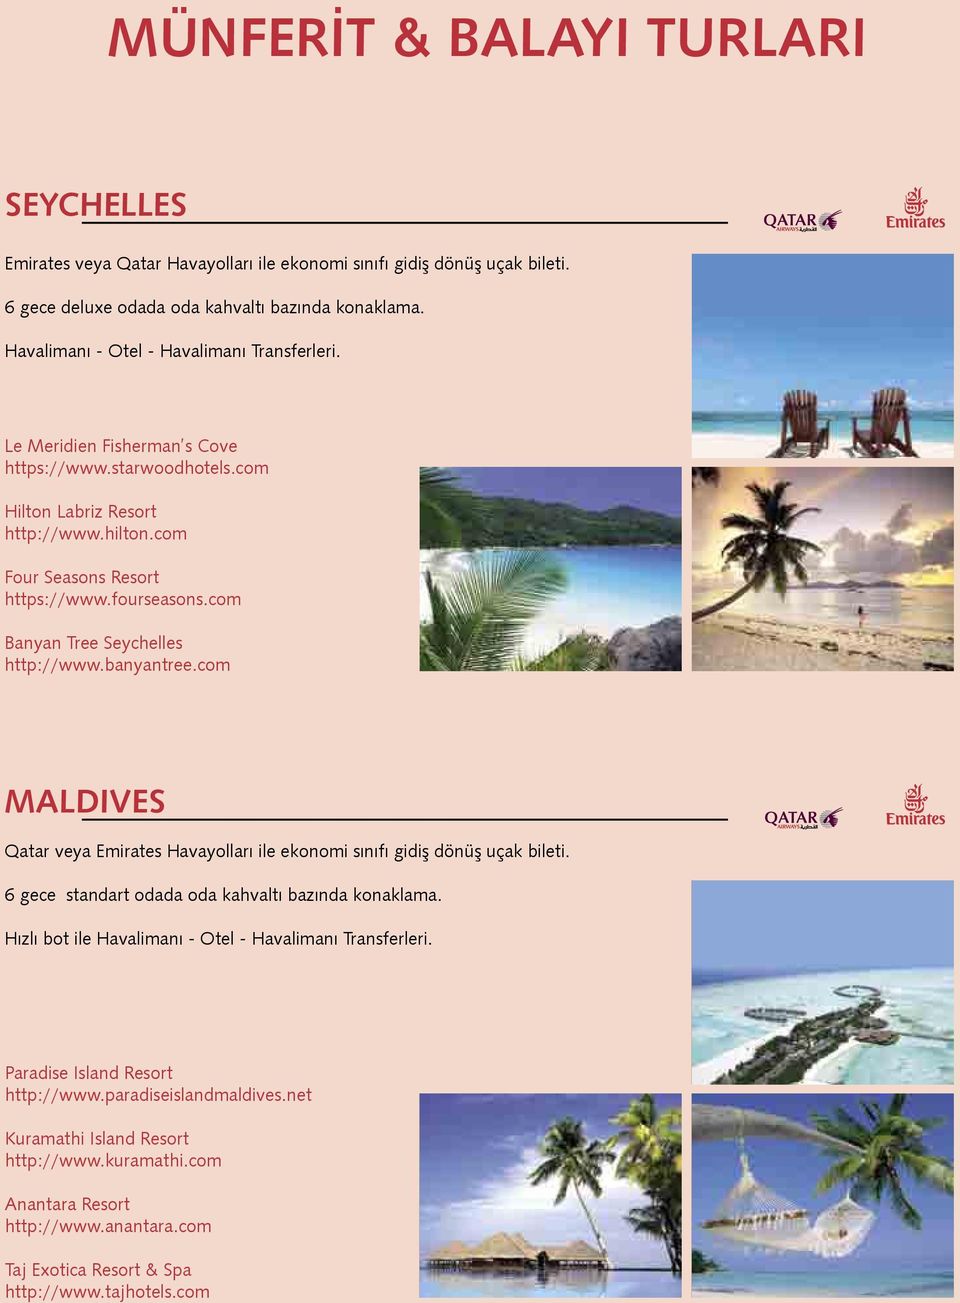 com Banyan Tree Seychelles http://www.banyantree.com MALDIVES Qatar veya Emirates Havayolları ile ekonomi sınıfı gidiş dönüş uçak bileti. 6 gece standart odada oda kahvaltı bazında konaklama.